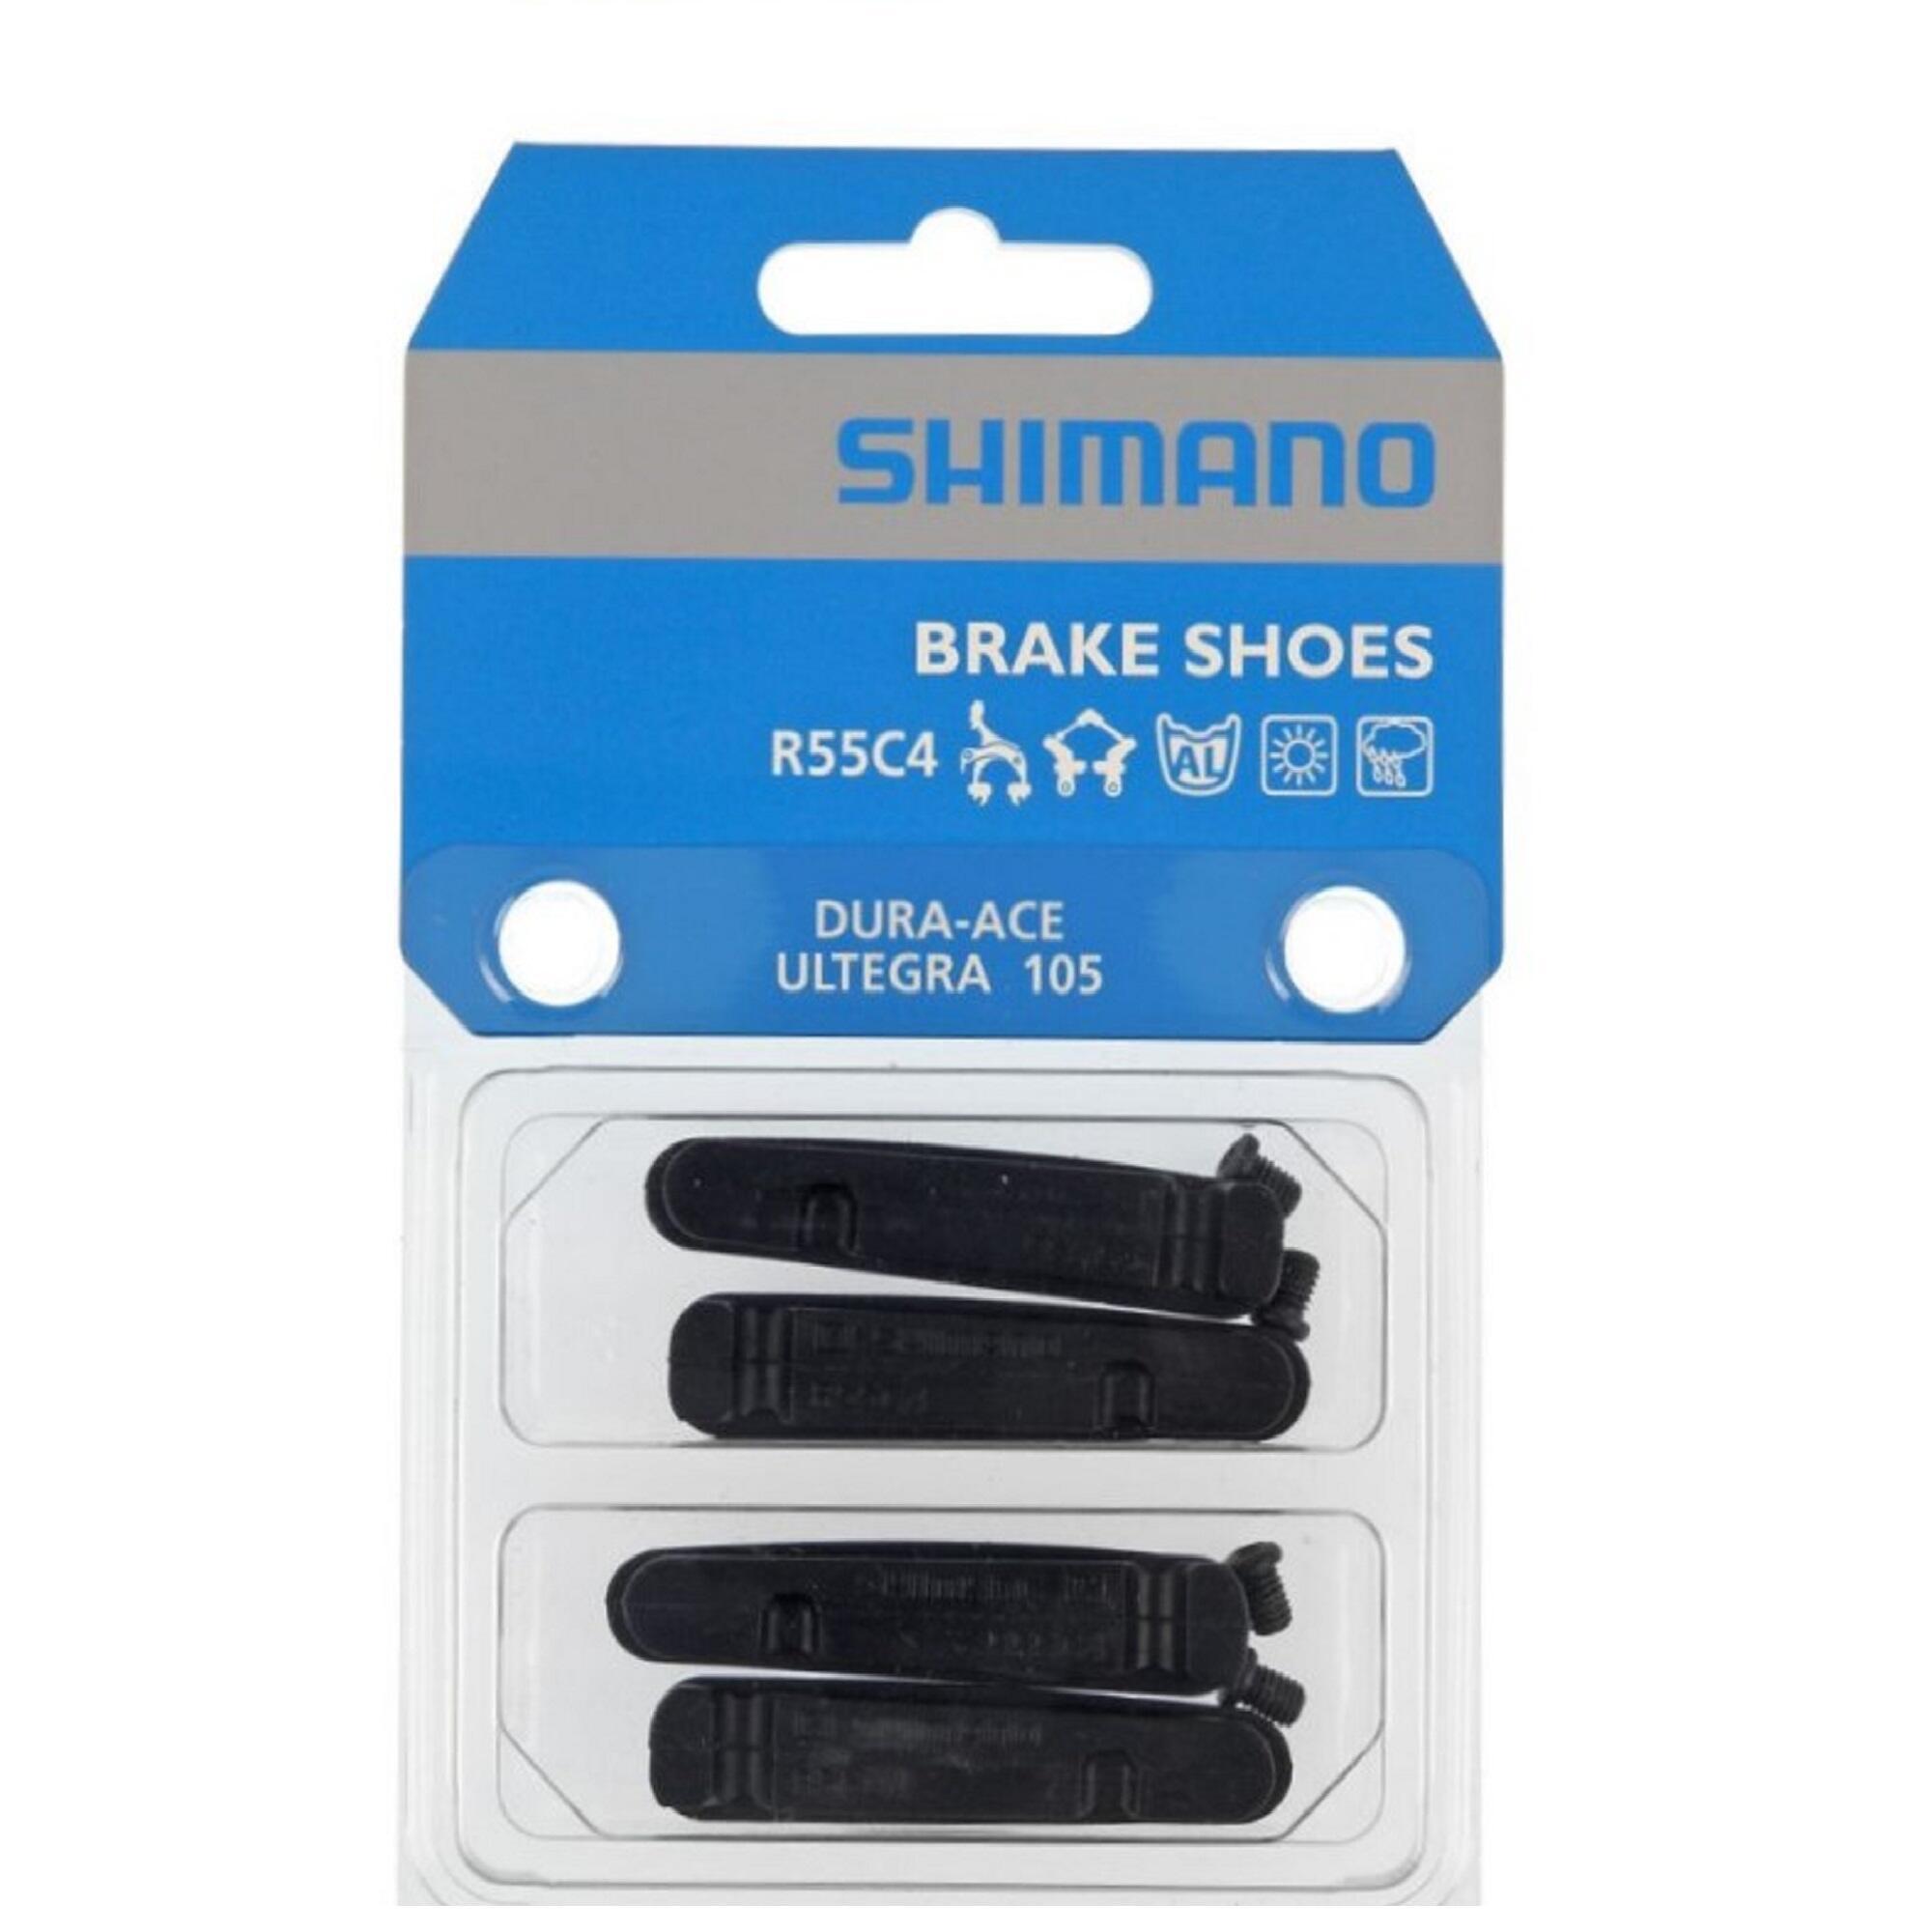 4 Тормозные колодки Shimano R55C4 Ultegra/Dura Ace вкладыш торм кол shimano шоссейн r55c4 пара для da ultegra 105 32324